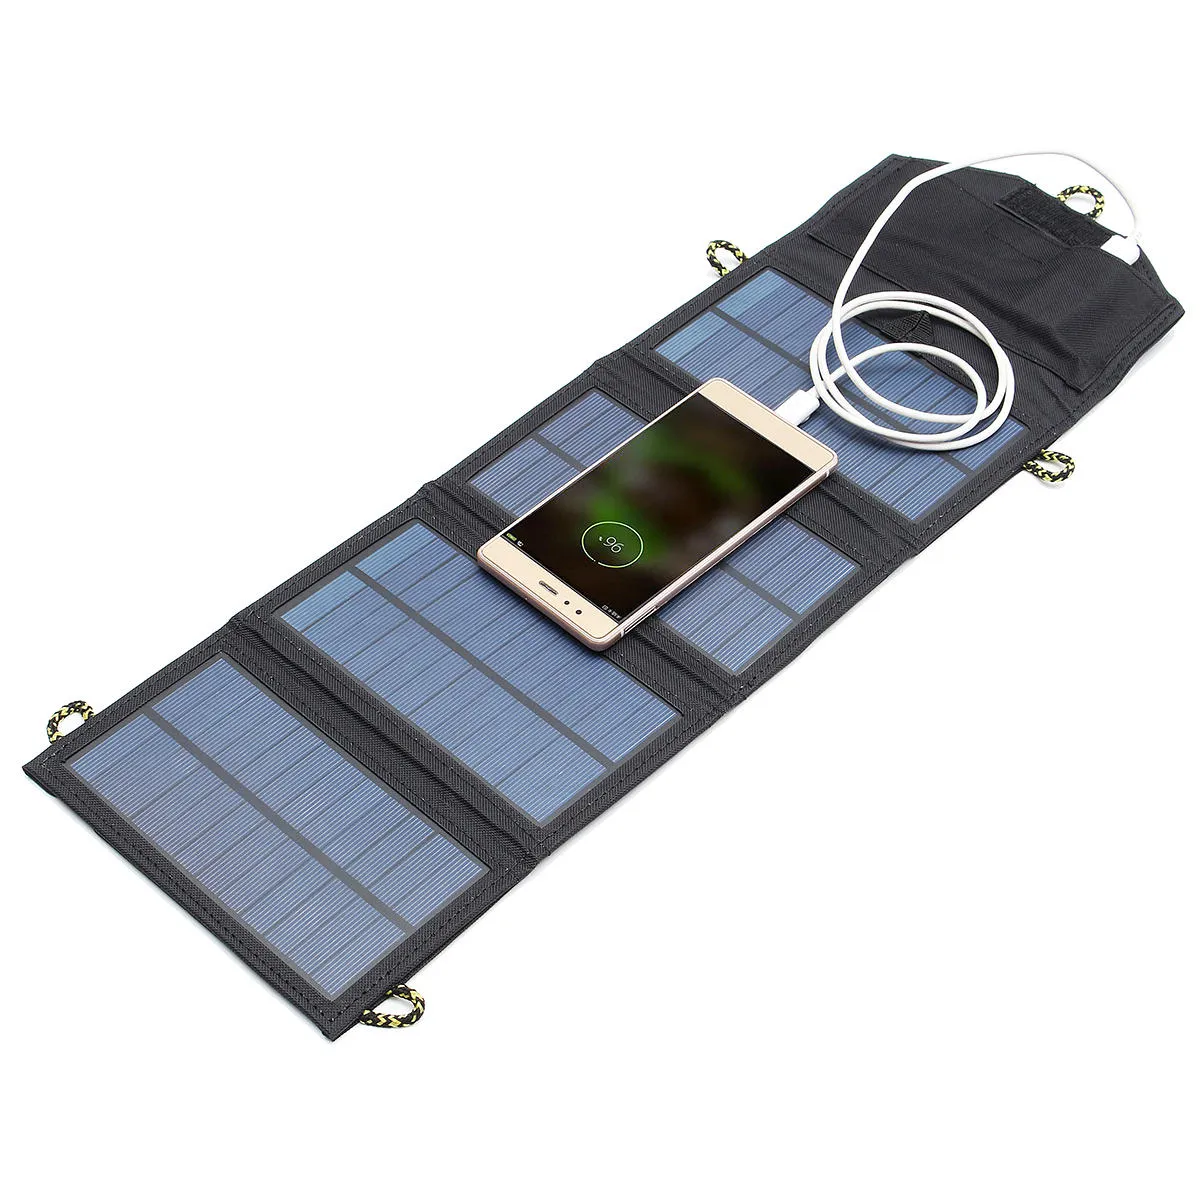 Горячие продажи 5 В 7 Вт Портативная солнечная панель Наружное путешествие Аварийный складное зарядное устройство Power Bank с USB-портом, Открытые гаджеты